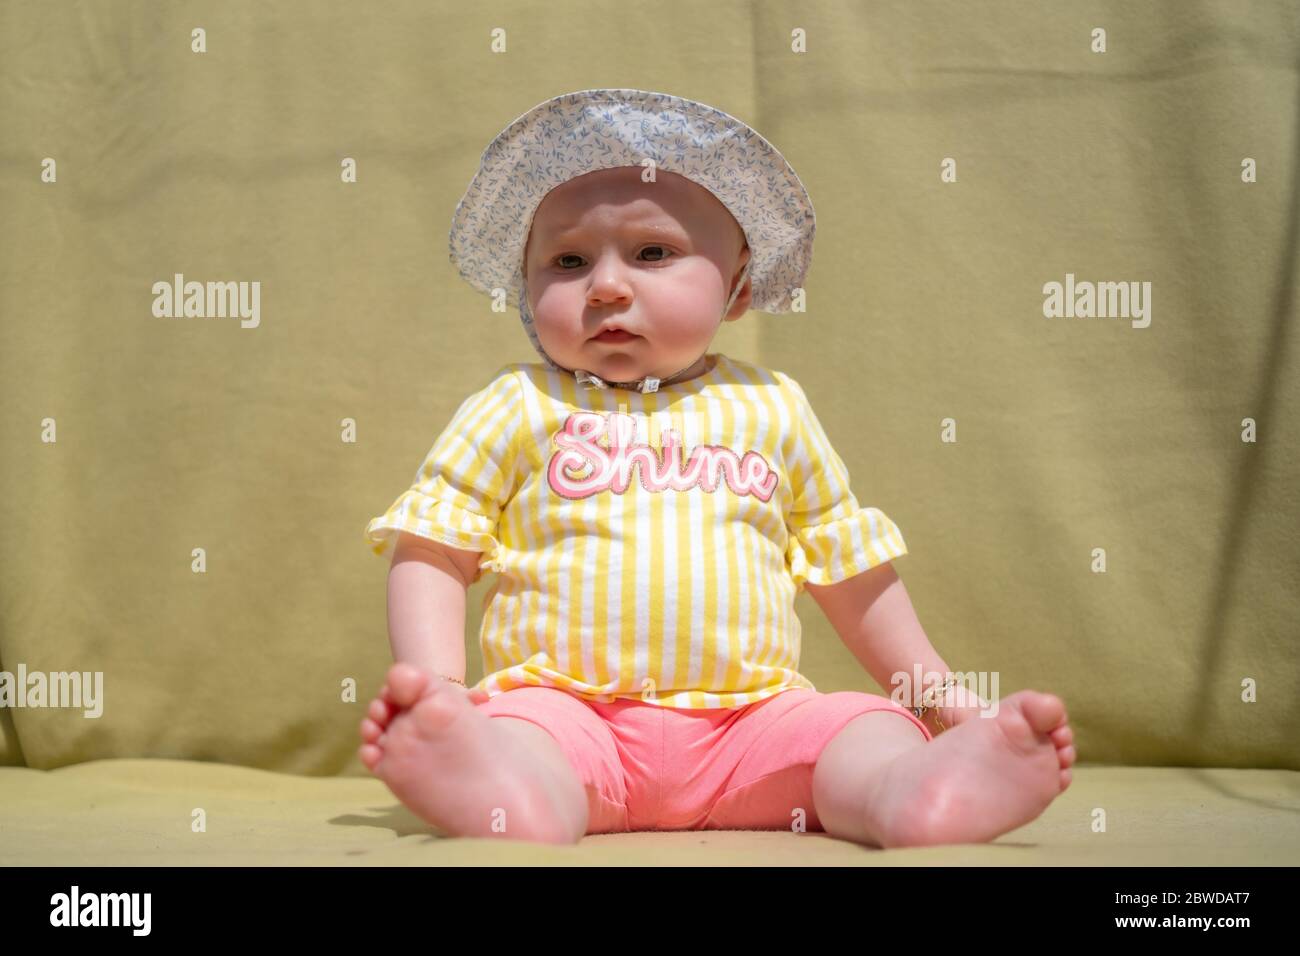 Mignon bébé fille porter adorable chapeau regardant l'appareil photo faire des visages drôles sur fond vert Banque D'Images